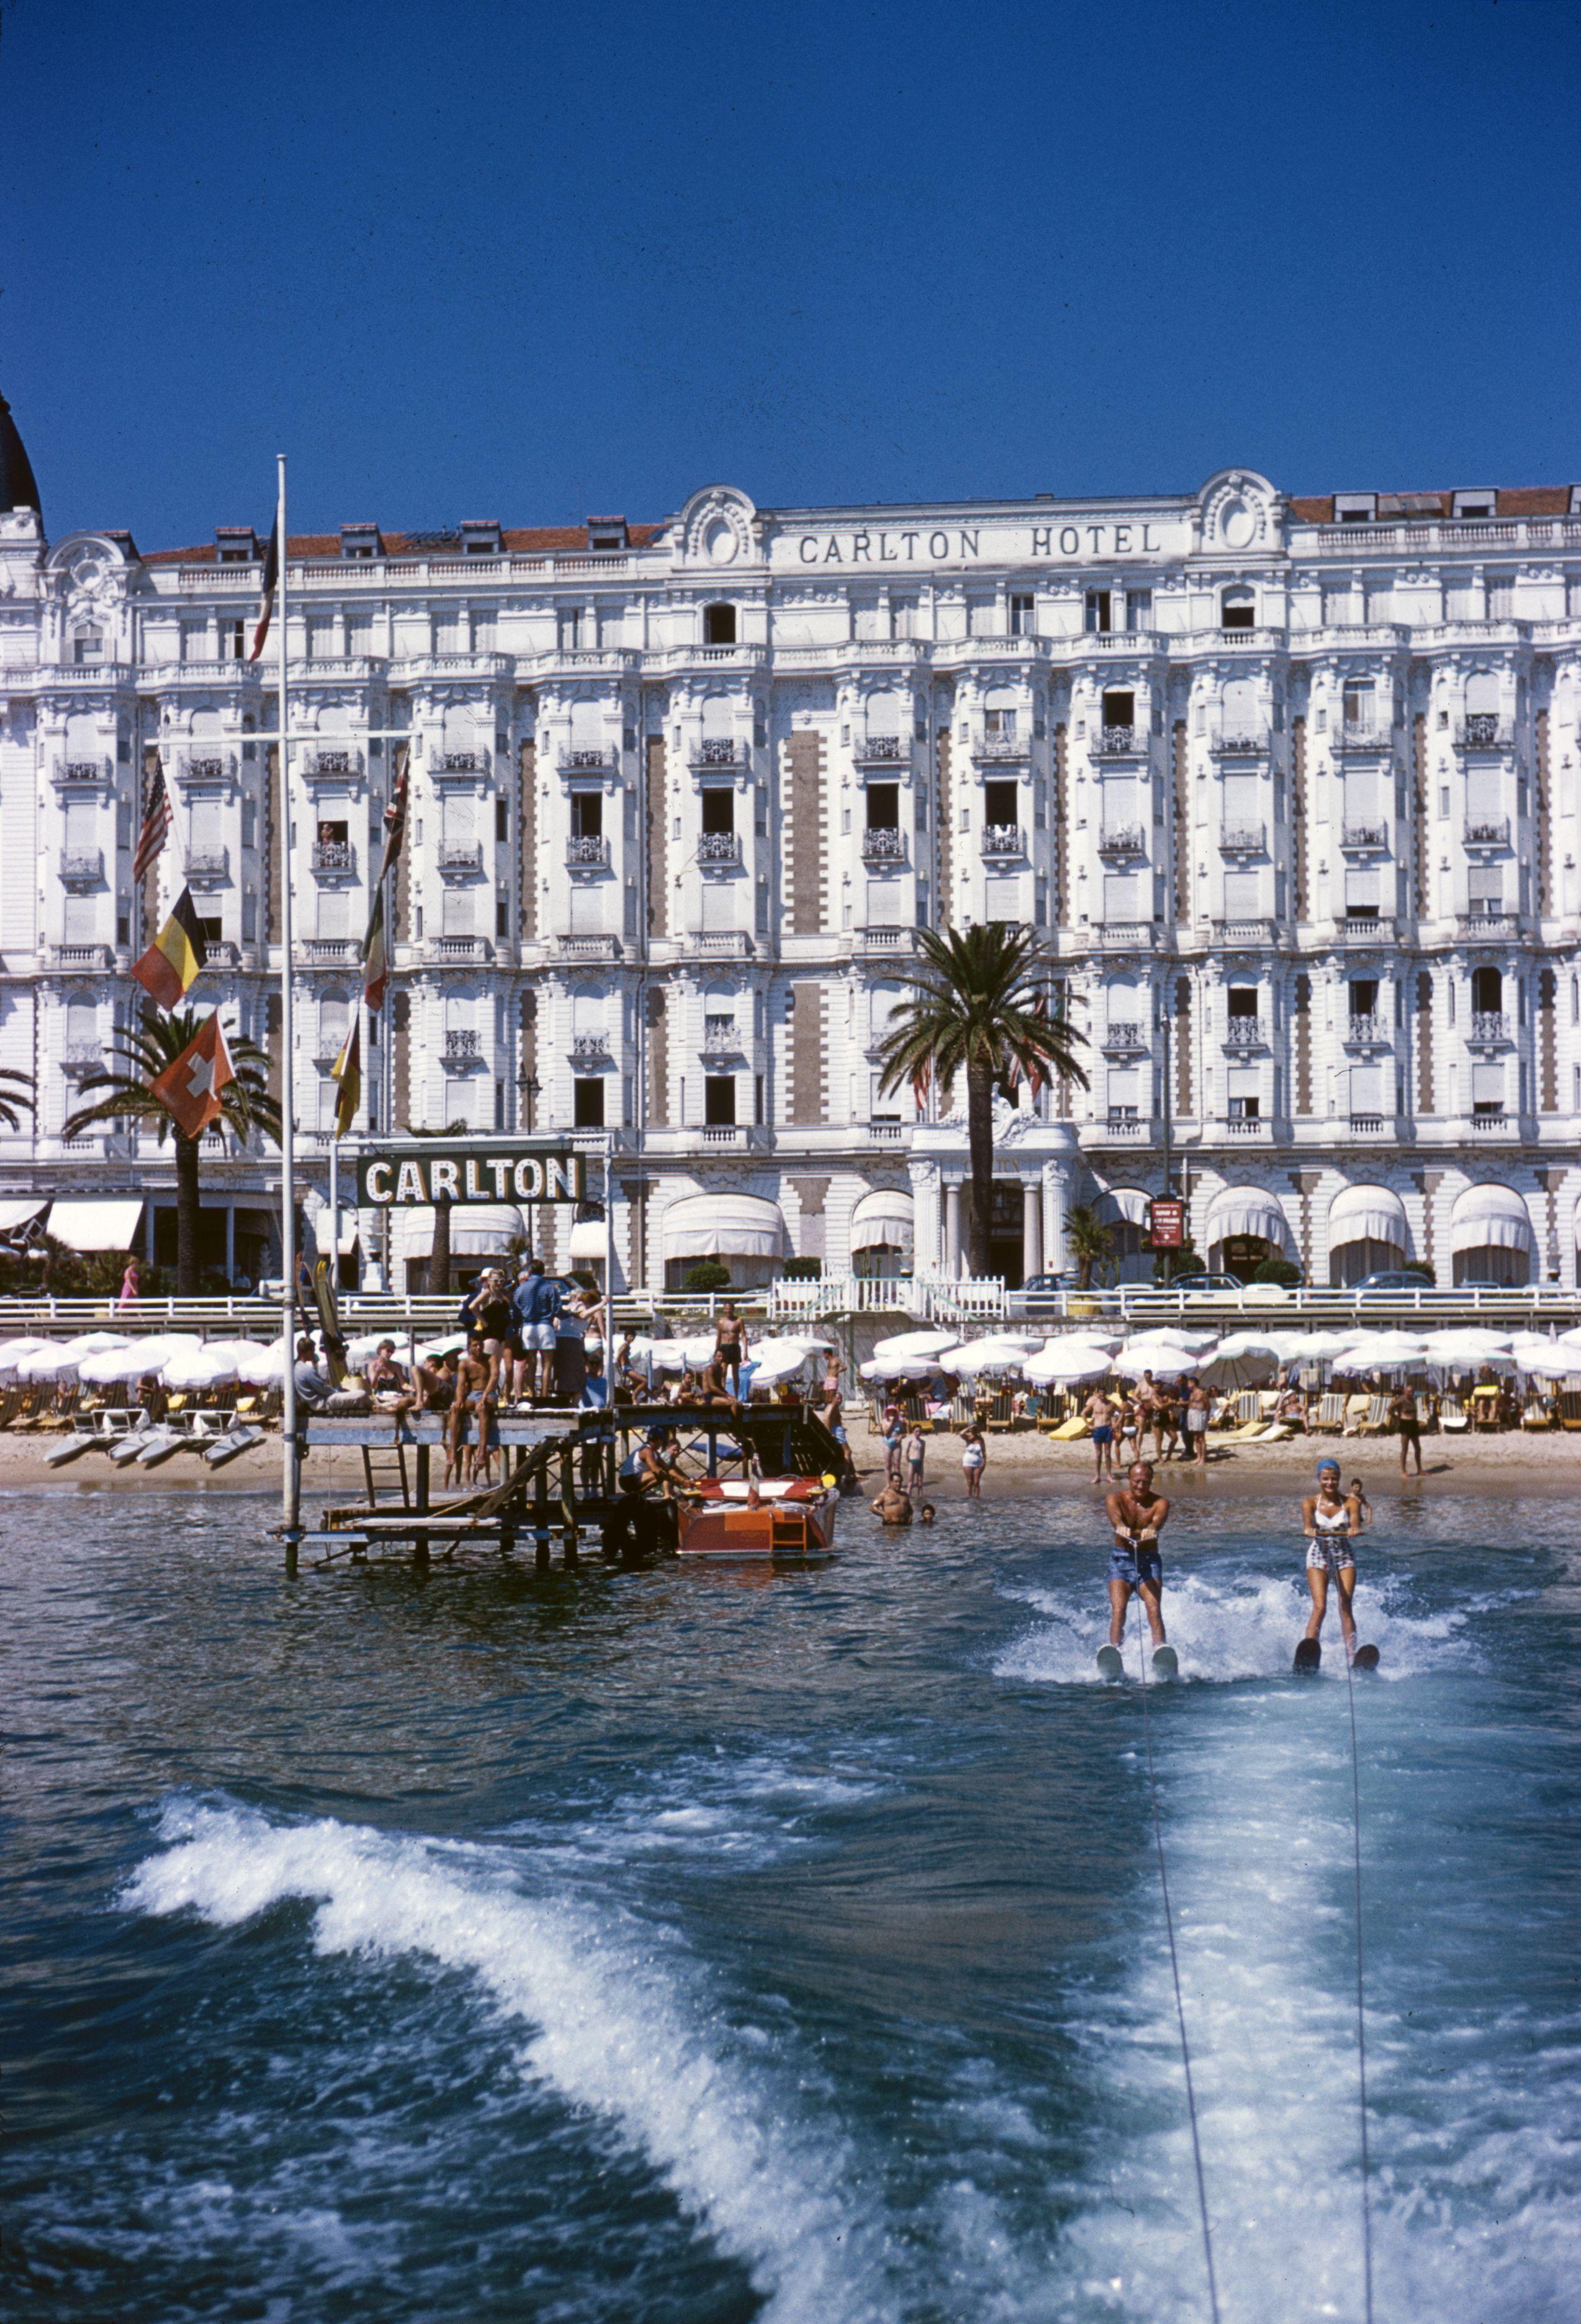 1958 : Des vacanciers font du ski nautique devant l'hôtel Carlton, à Cannes.

Cannes Sports
Hôtel Carlton, Cannes, France
Tirage chromogène Lambda
Imprimé plus tard
Slim Aarons Estate Edition
Expédition gratuite du revendeur à votre encadreur, dans